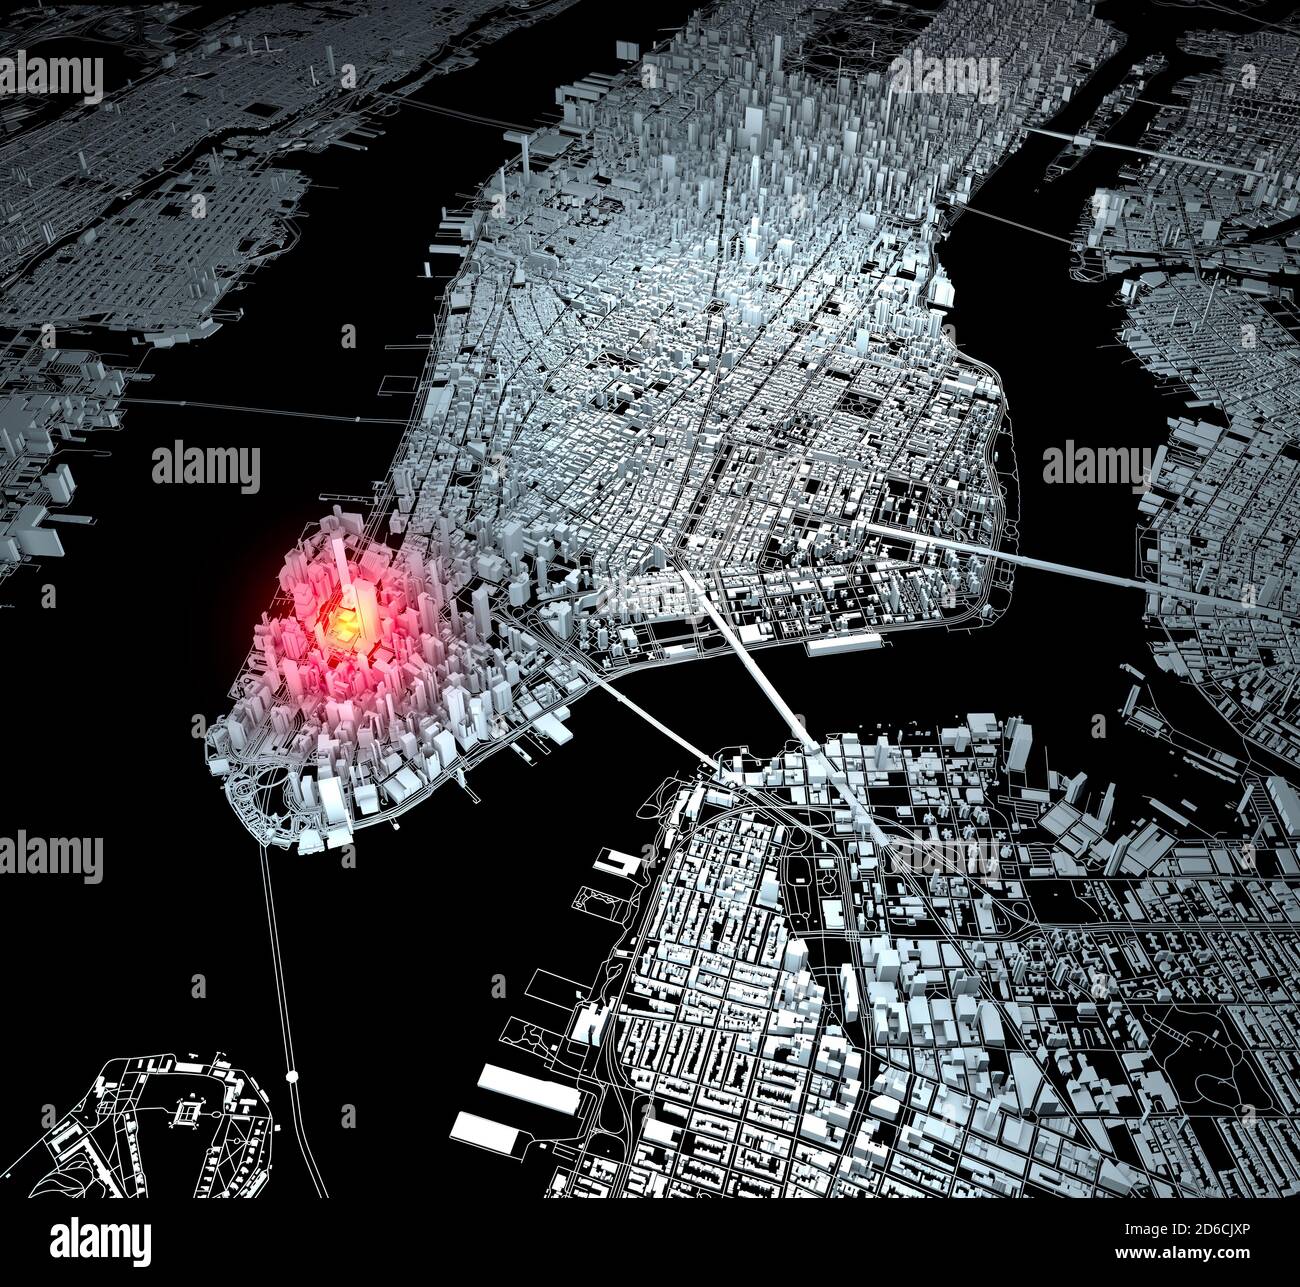 Vista satellitare della città di New York, mappa, edifici 3d, rendering 3d. Strade e grattacieli di Manhattan. Massa zero. Il sito del World Trade Center. Stati Uniti Foto Stock